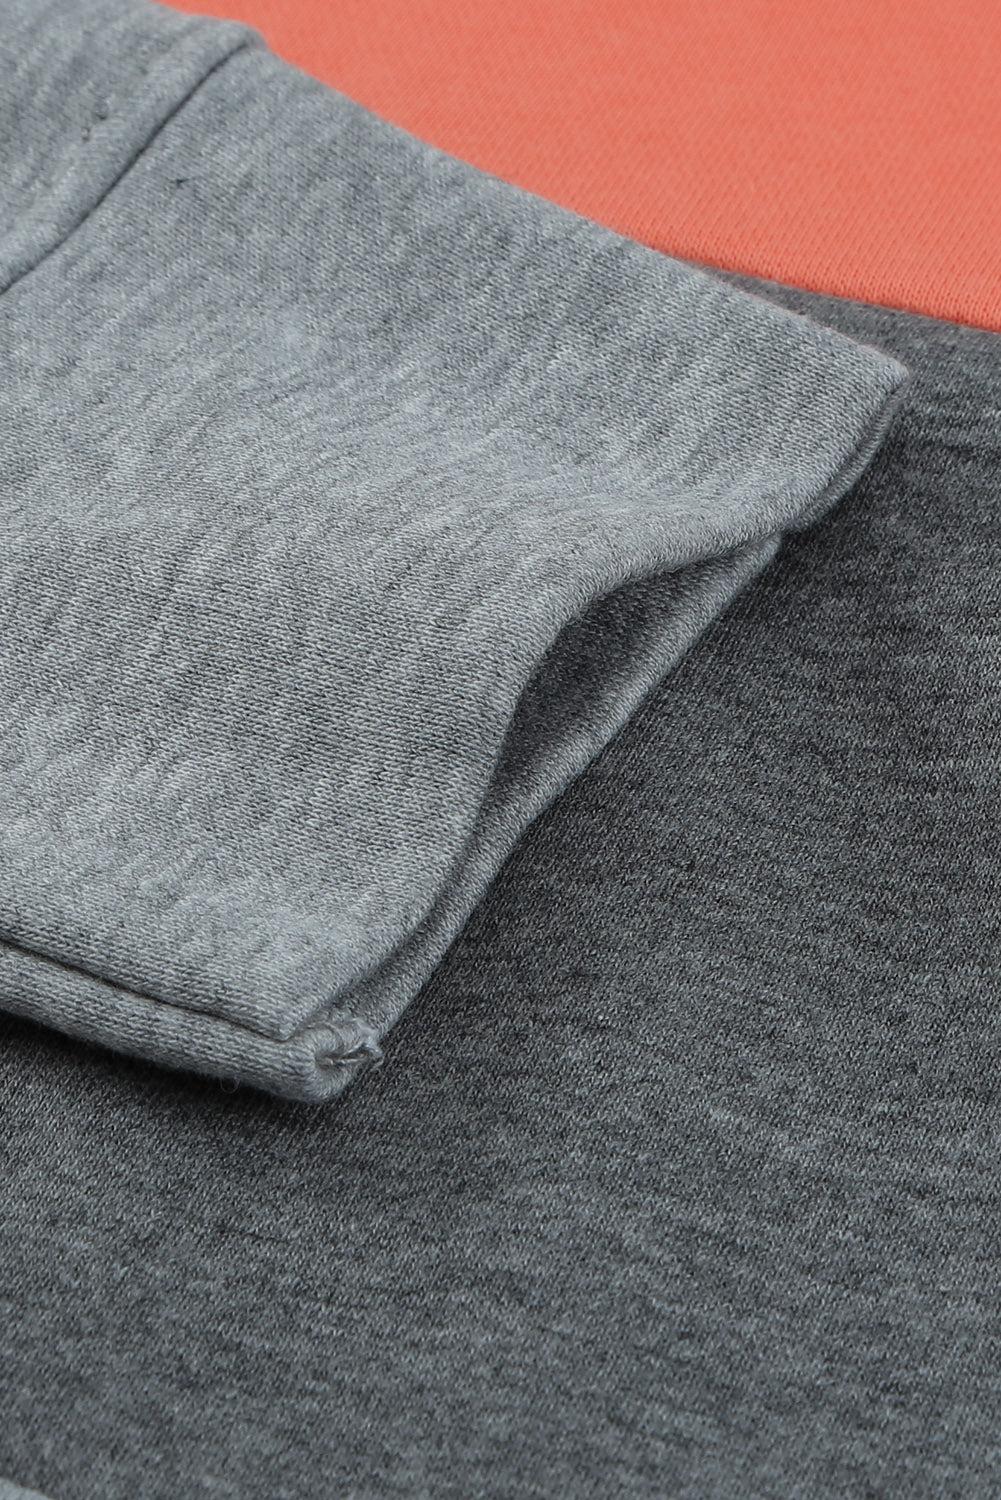 Gray Crew Neck Colorblock Plus Size Sweatshirt